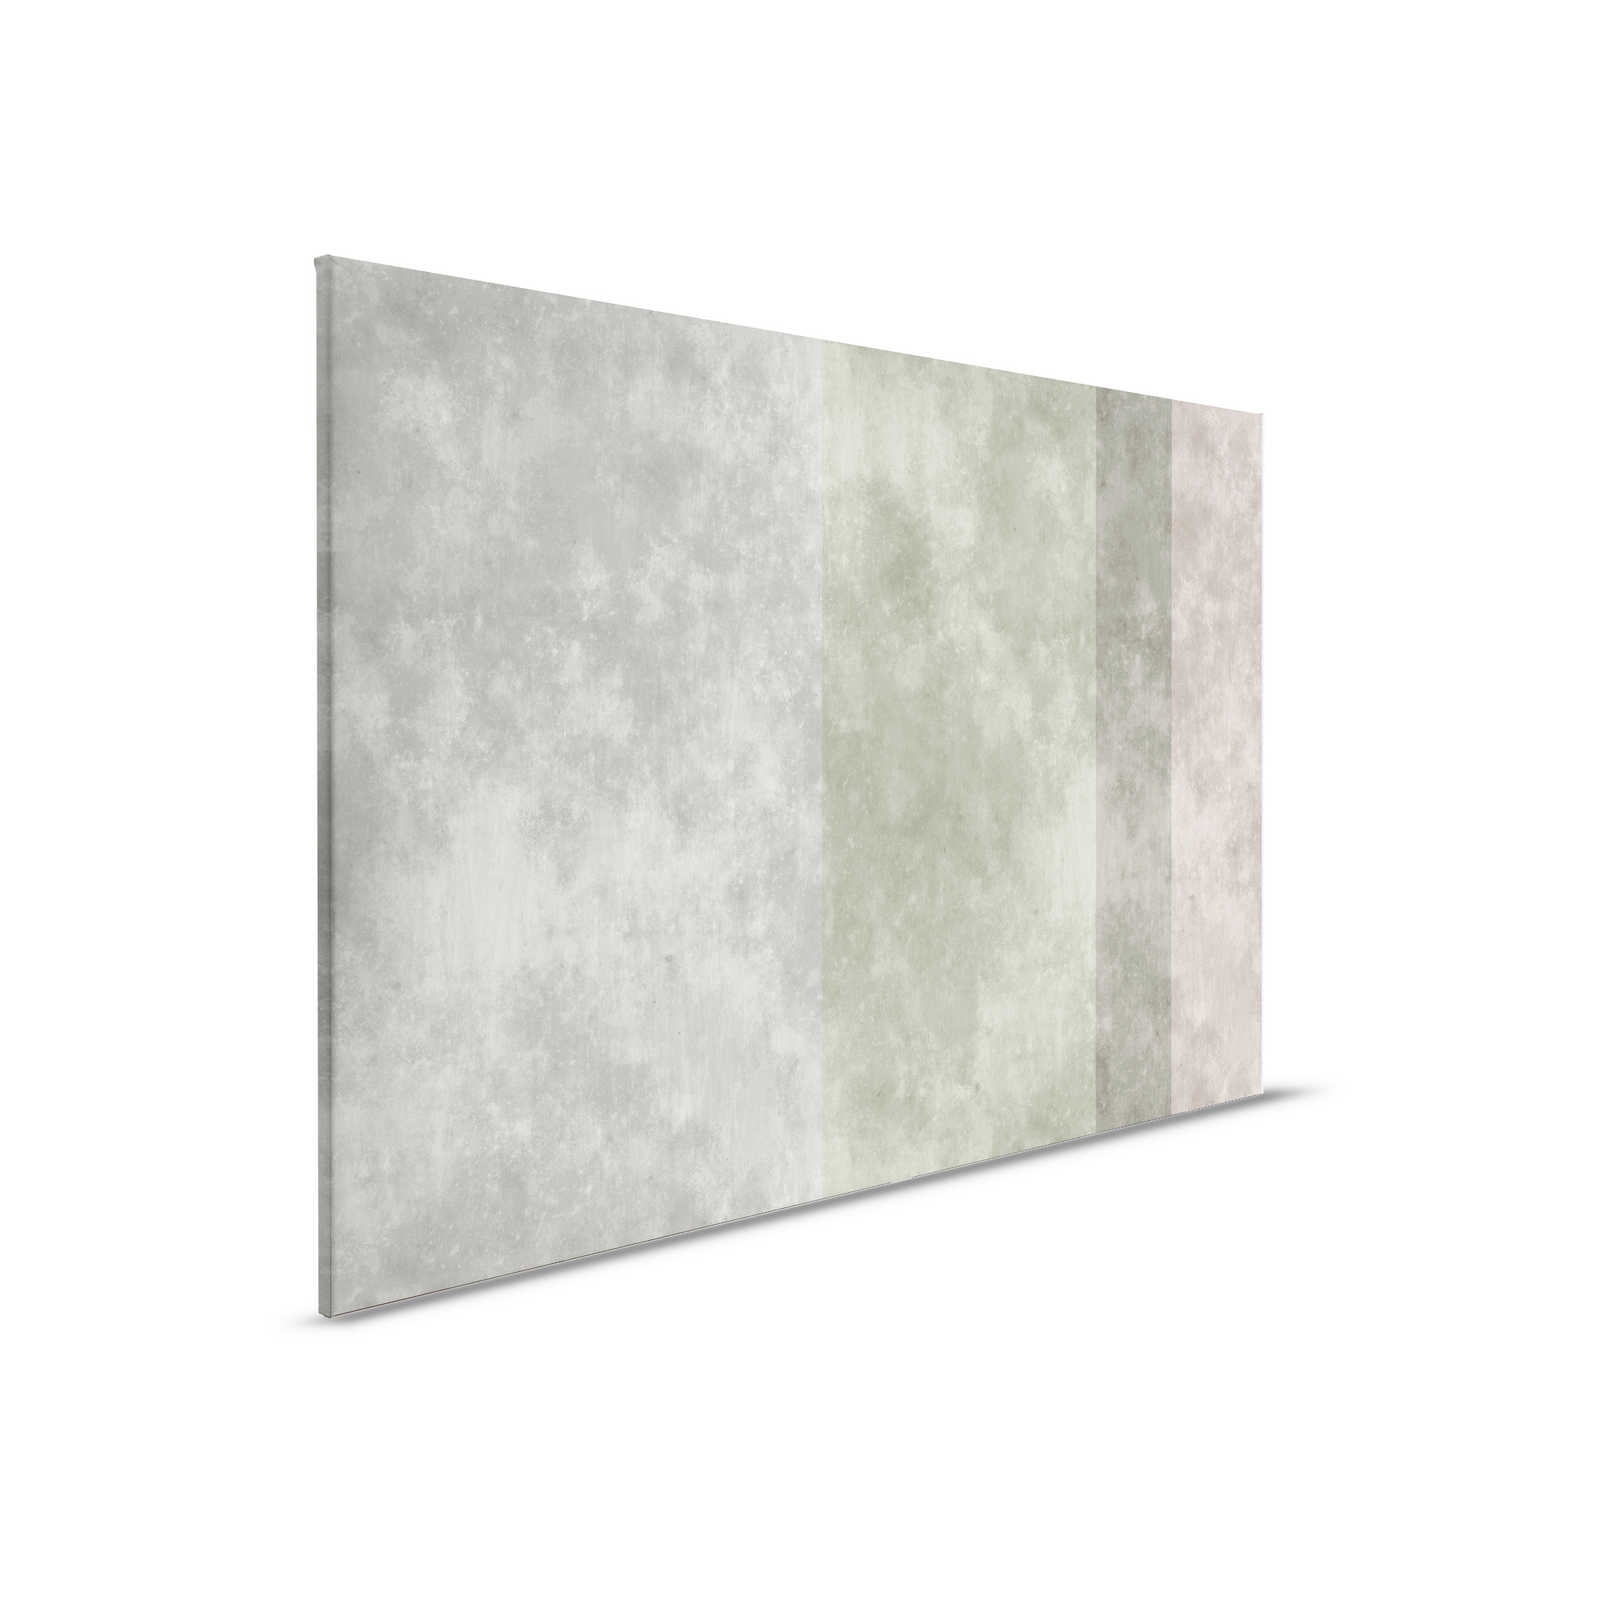 Quadro di tela effetto cemento con strisce - 0,90 m x 0,60 m
